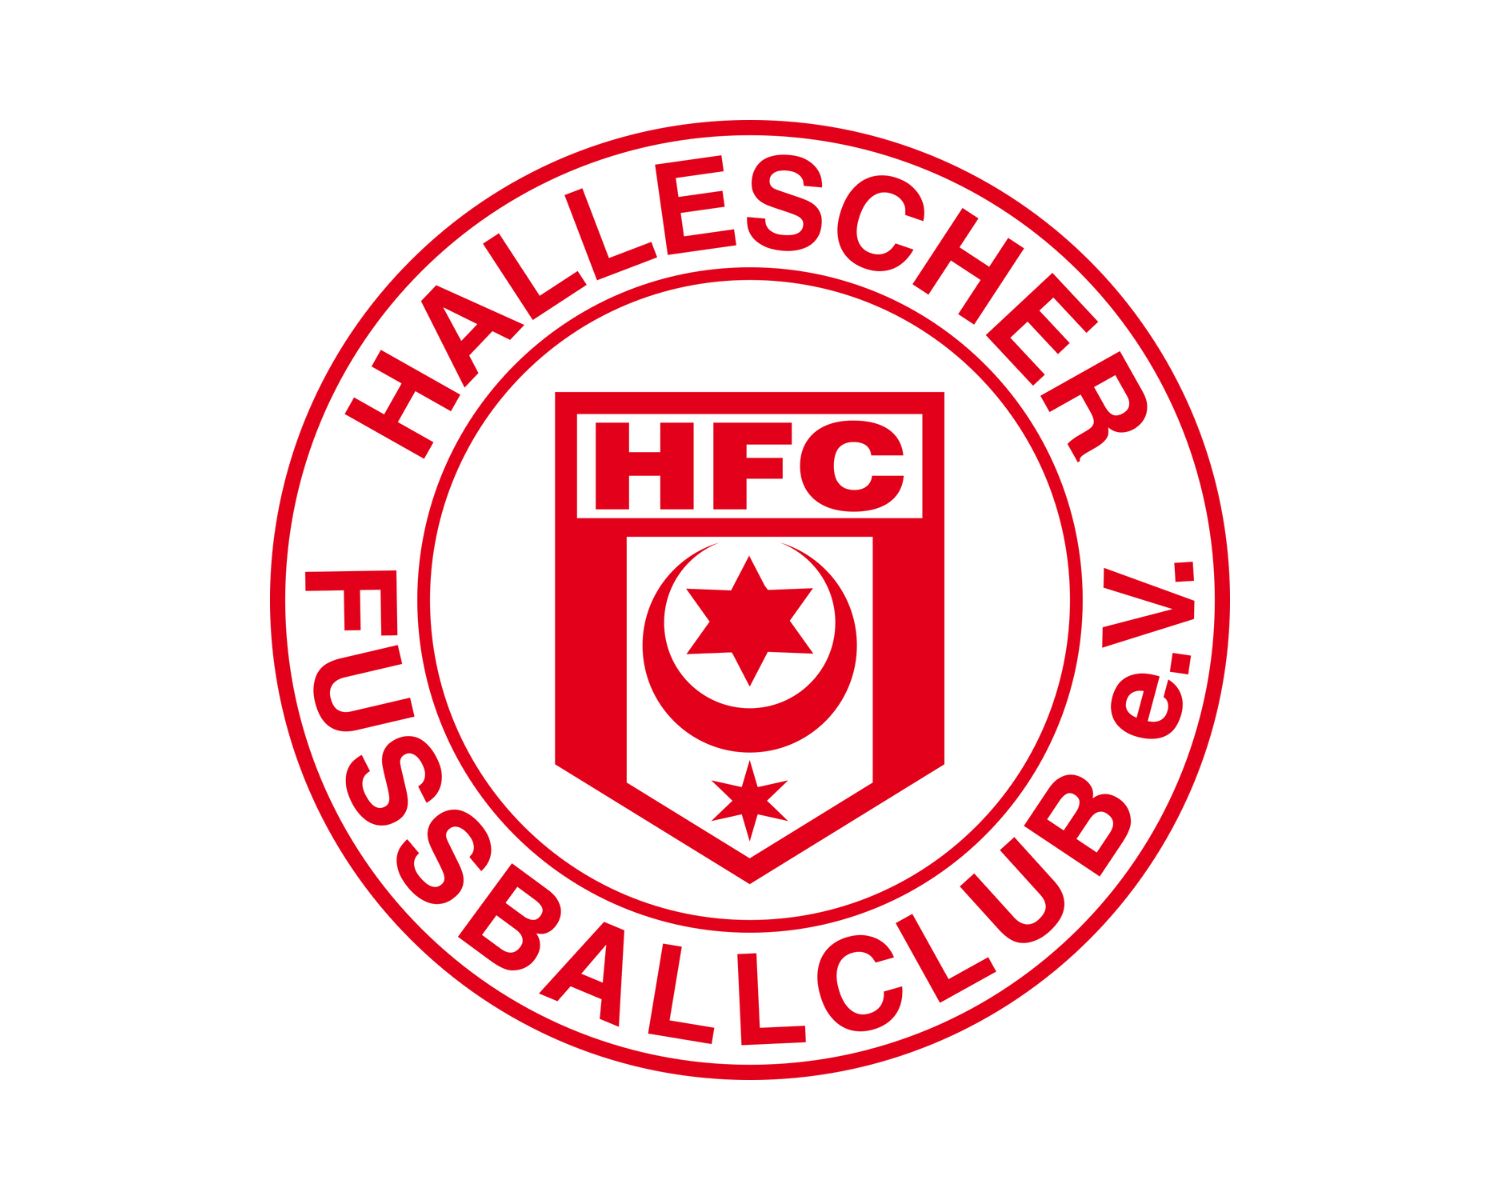 hallescher-fc-u19-23-football-club-facts